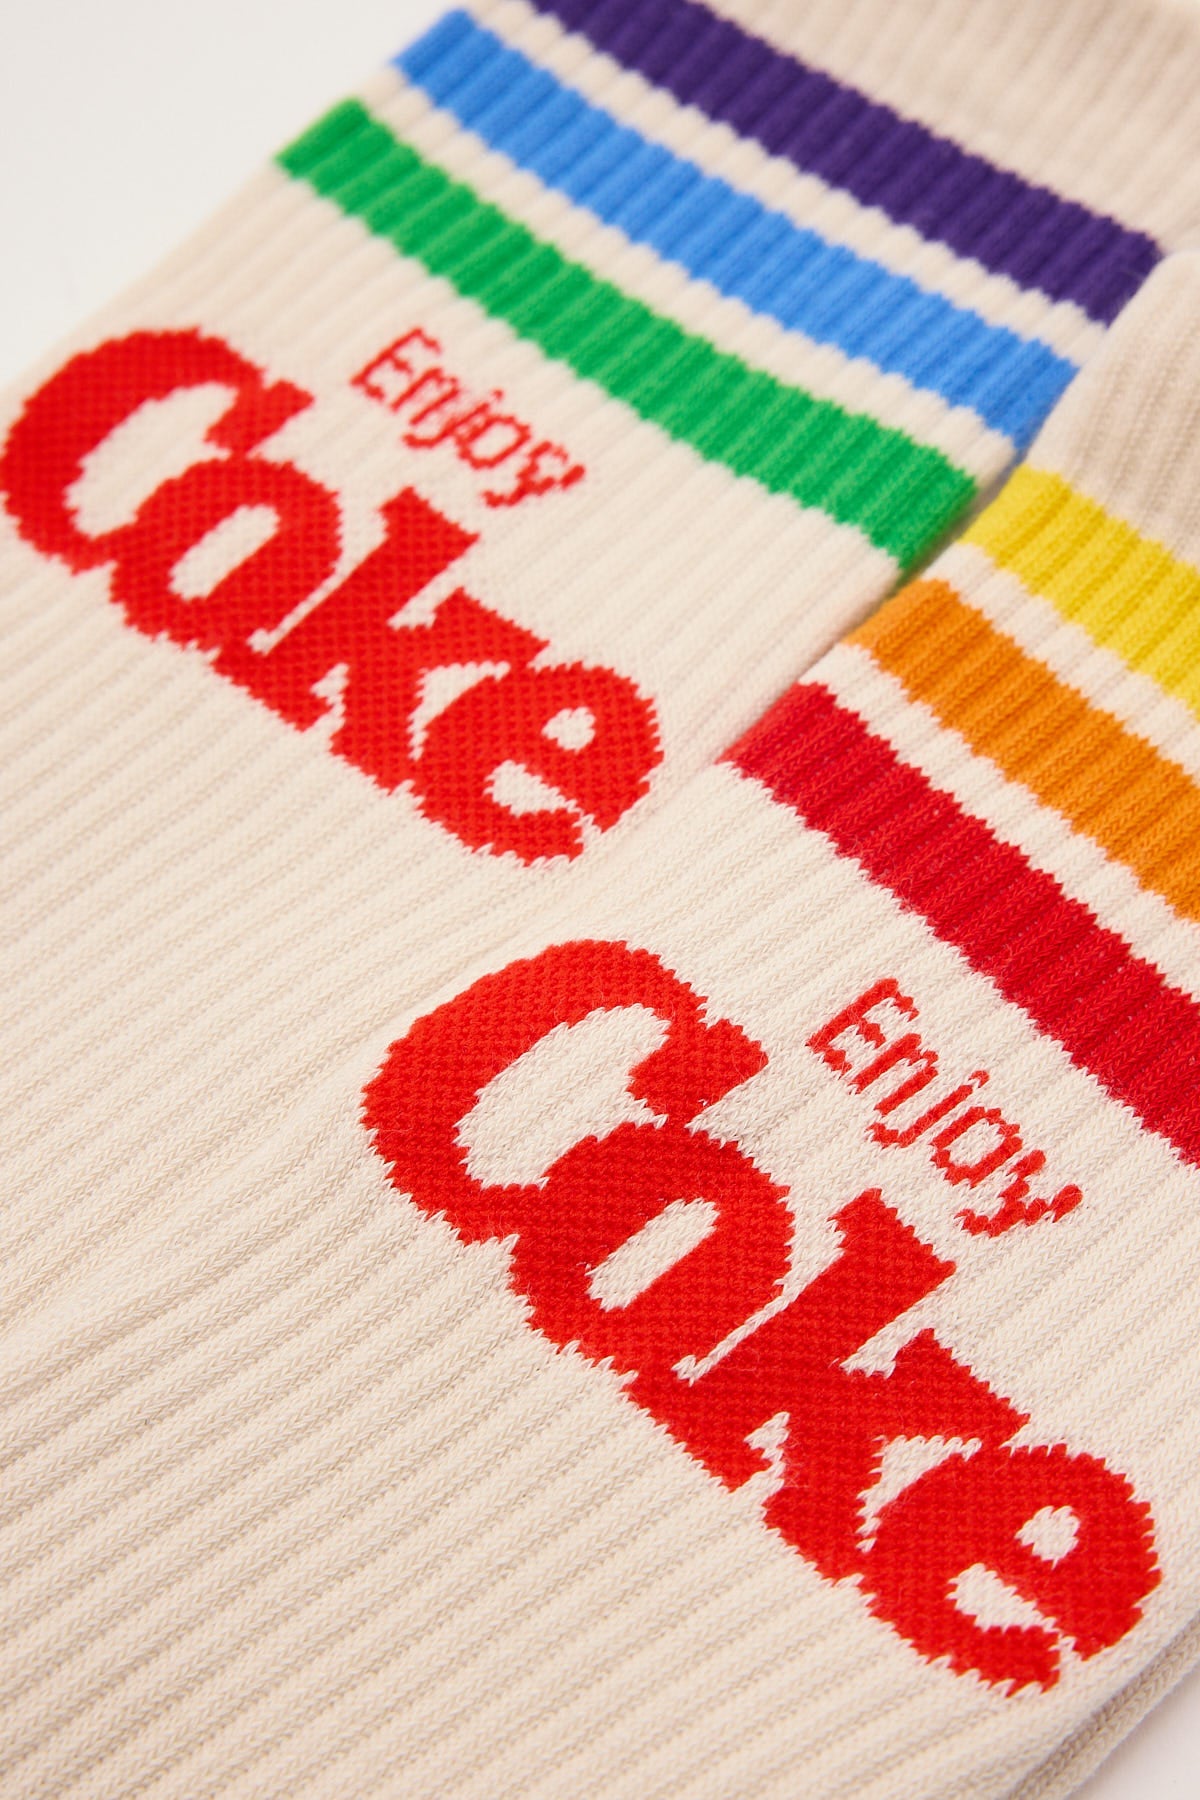 Footies Coke Pride Stripes 2pk Sock Cream